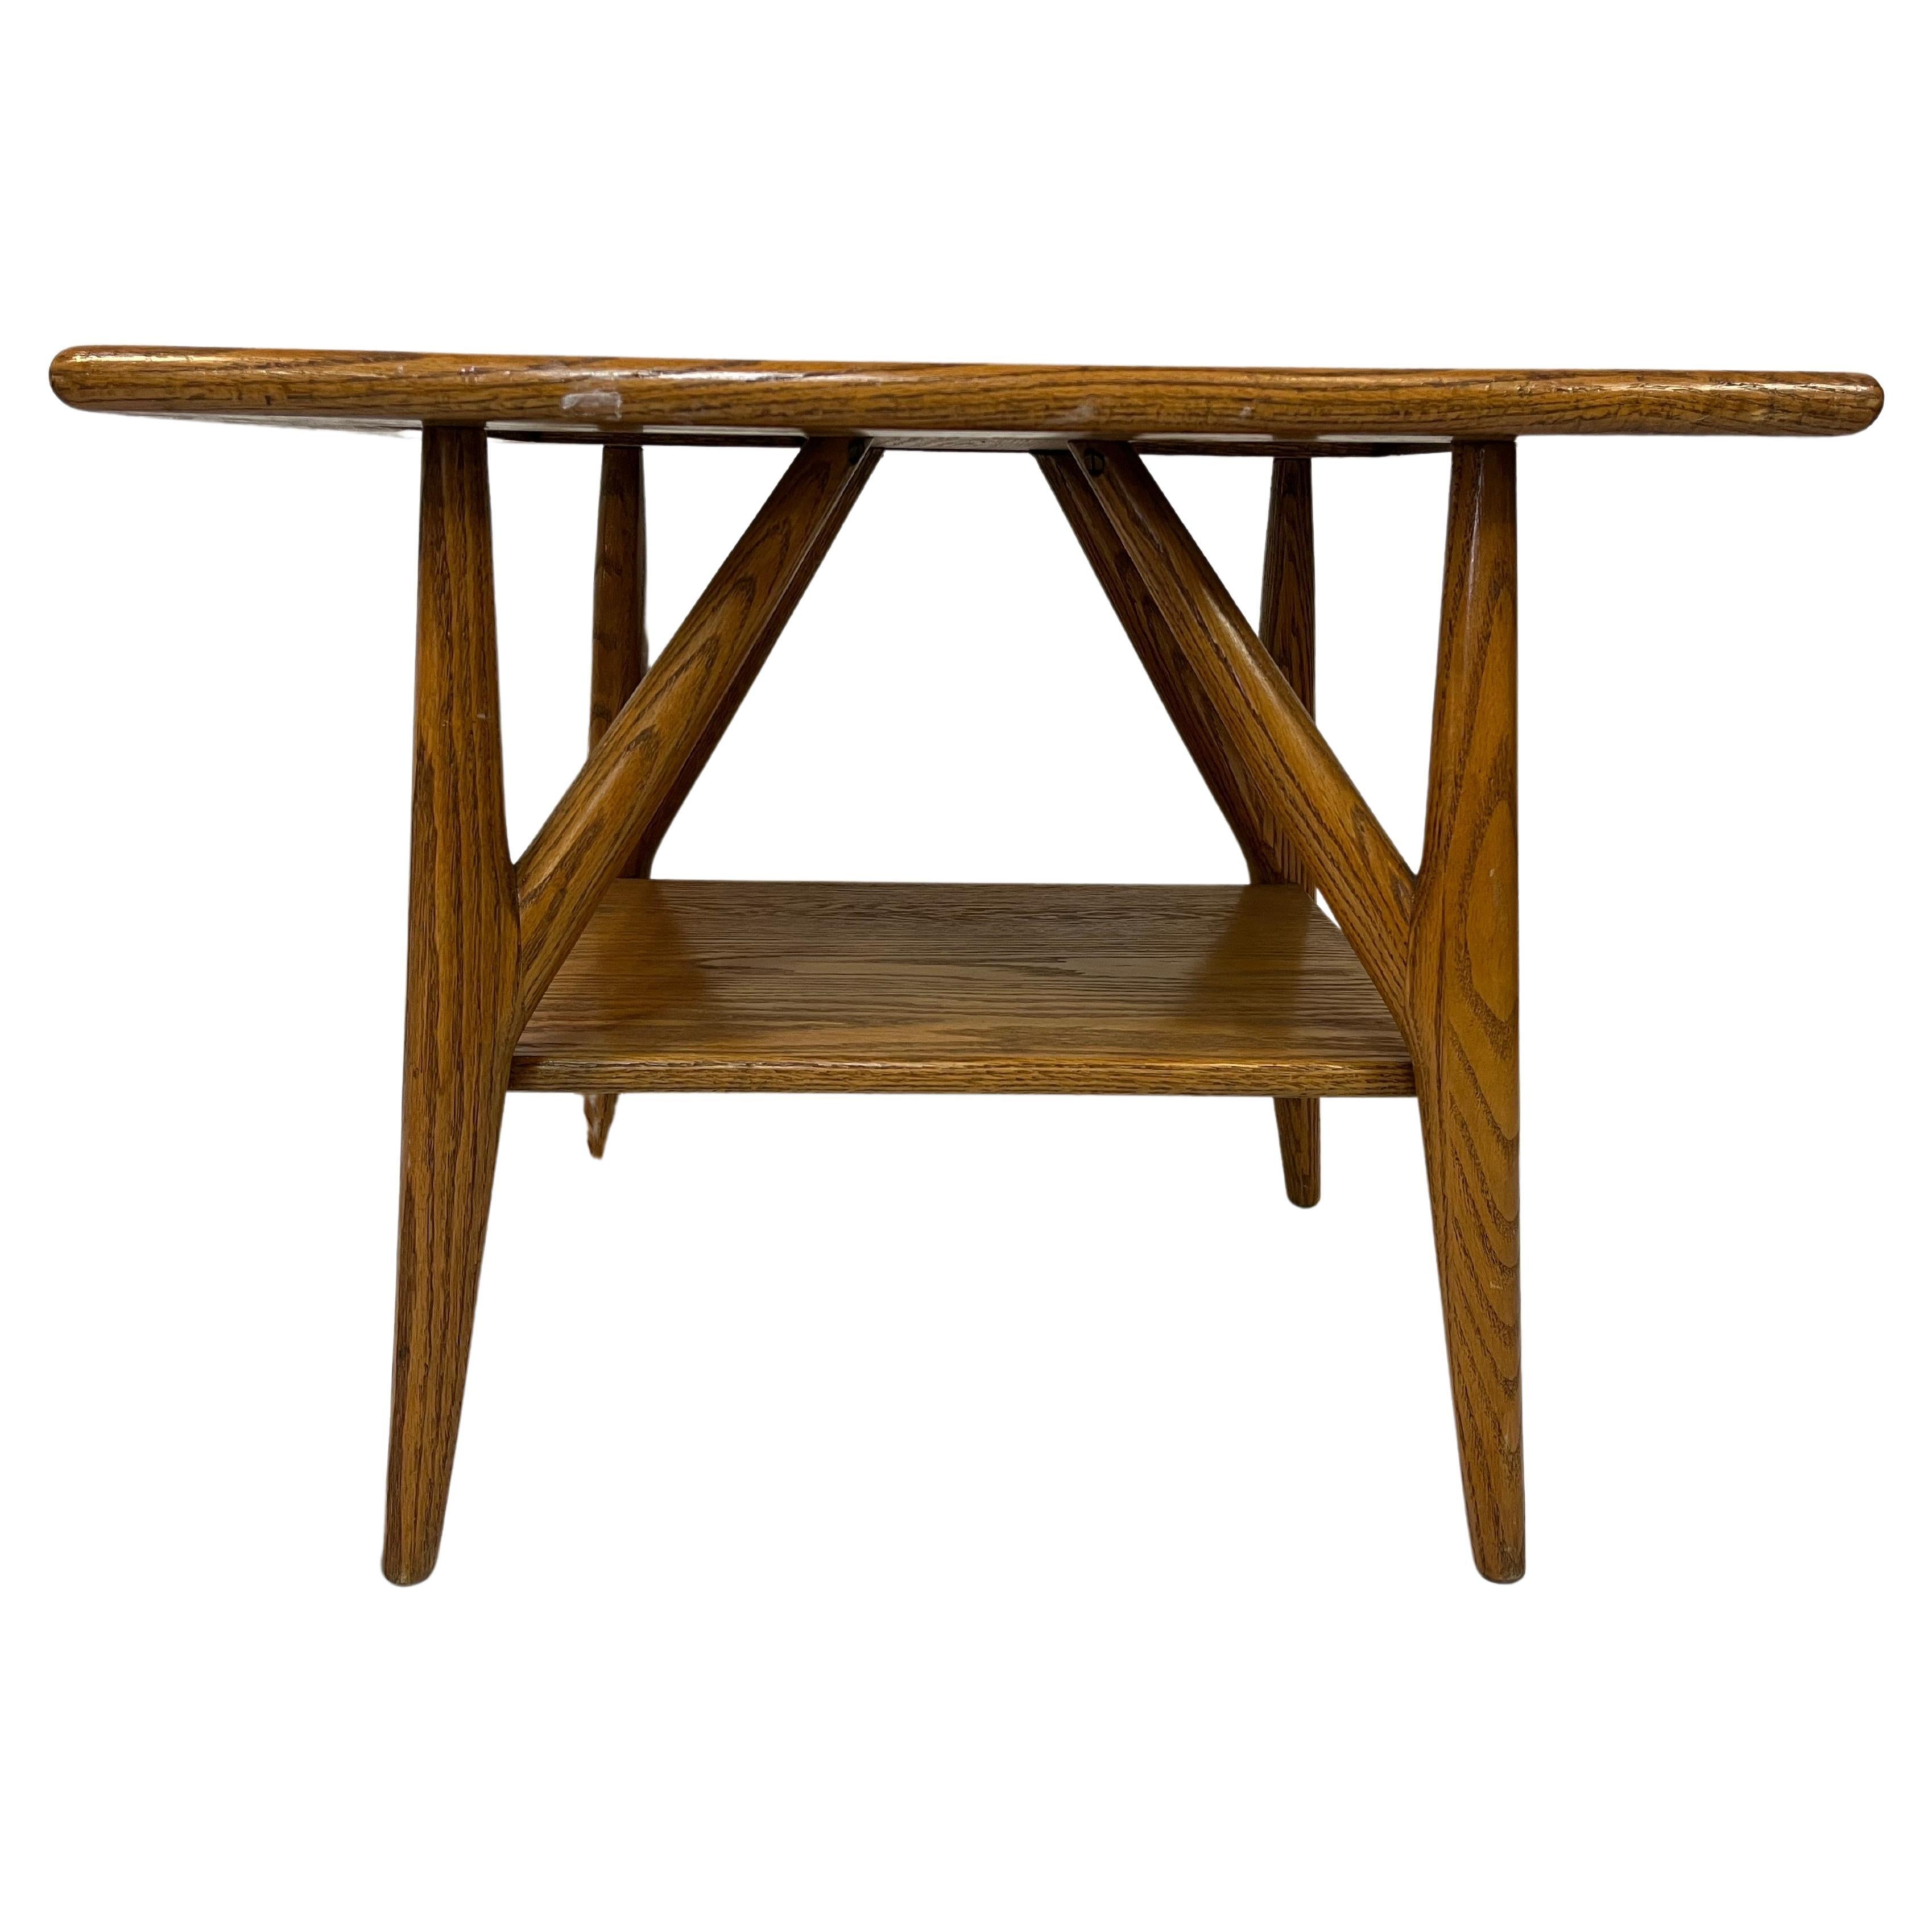 Jack Van Der Molen Mid Century Modern American Design Oak Wood Side or End Table For Sale